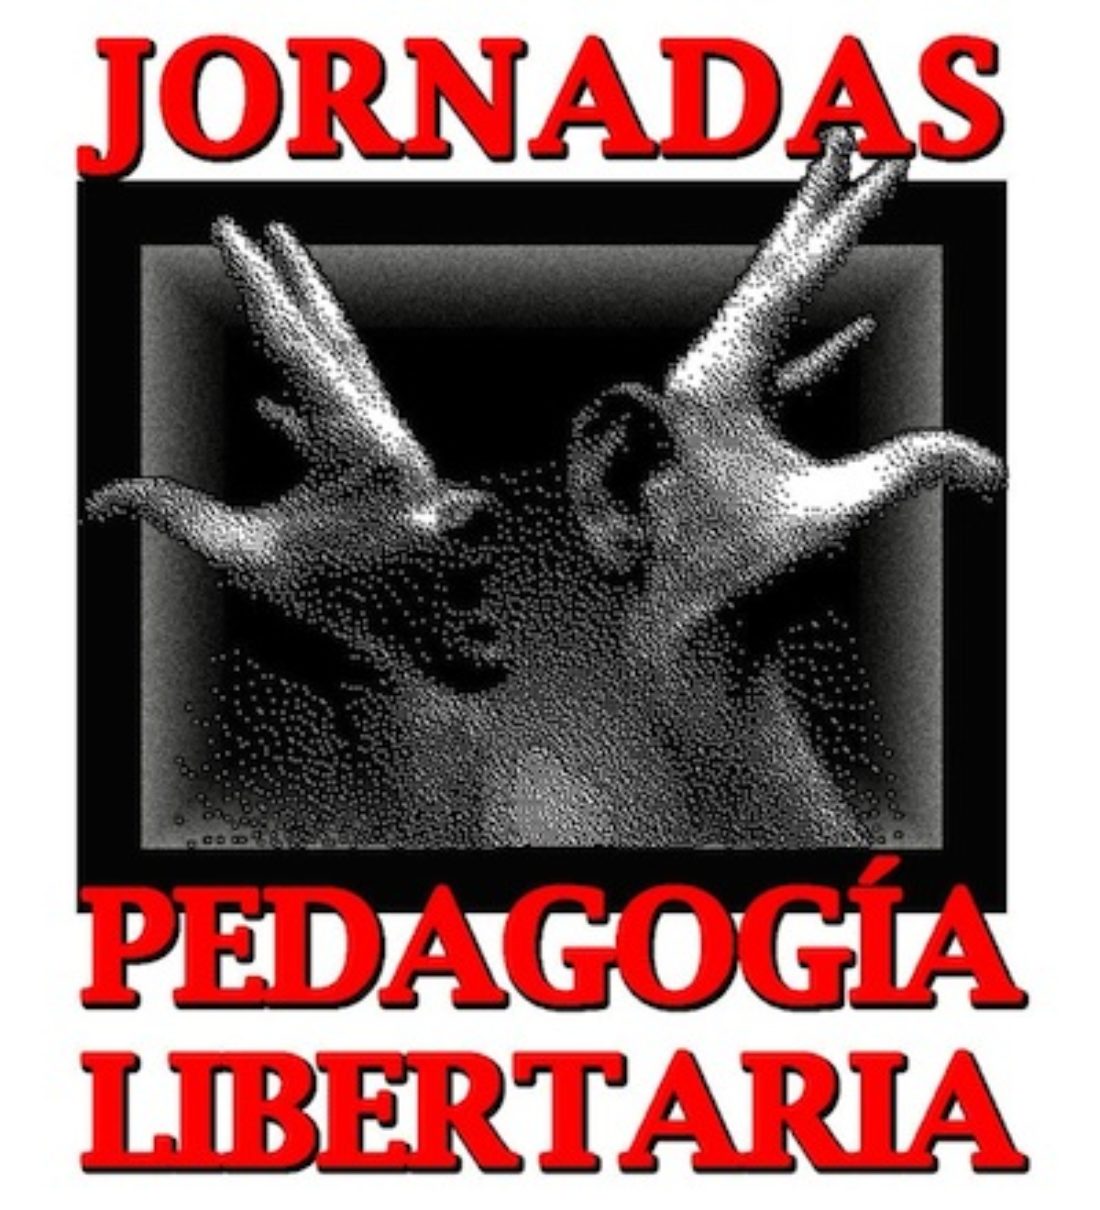 Jornadas de pedagogía libertaria en Granada (del 23 al 27 de abril)